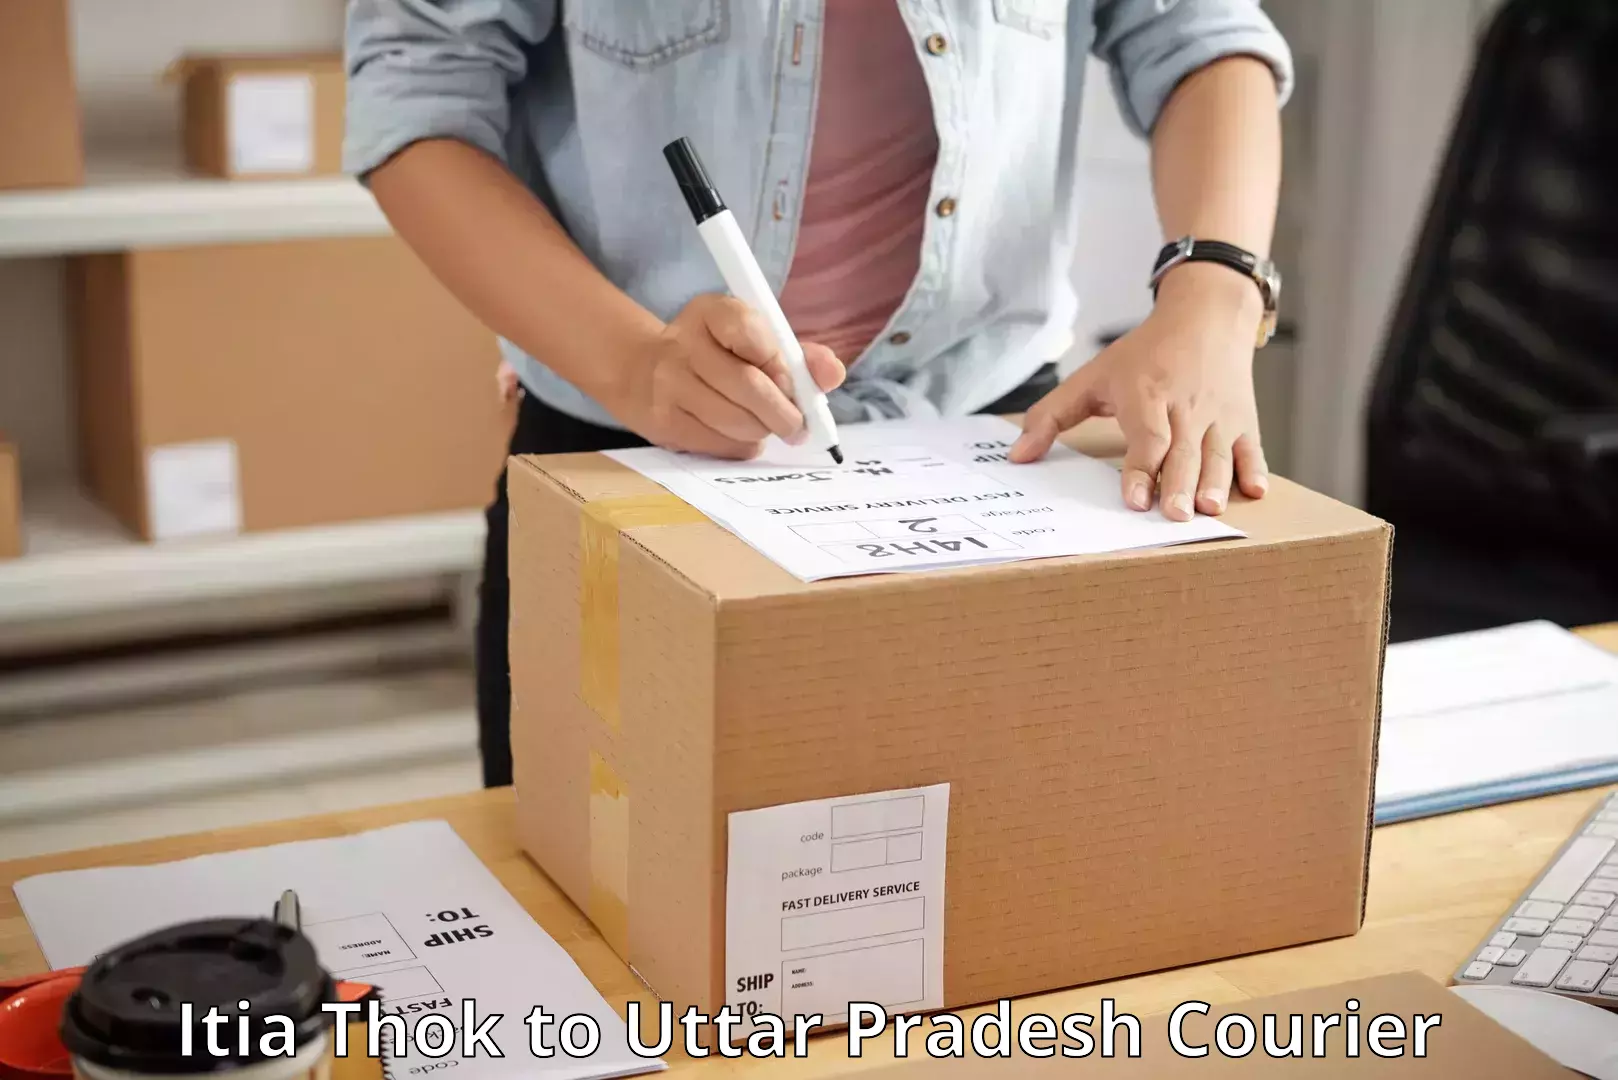 Dynamic courier services Itia Thok to Uttar Pradesh